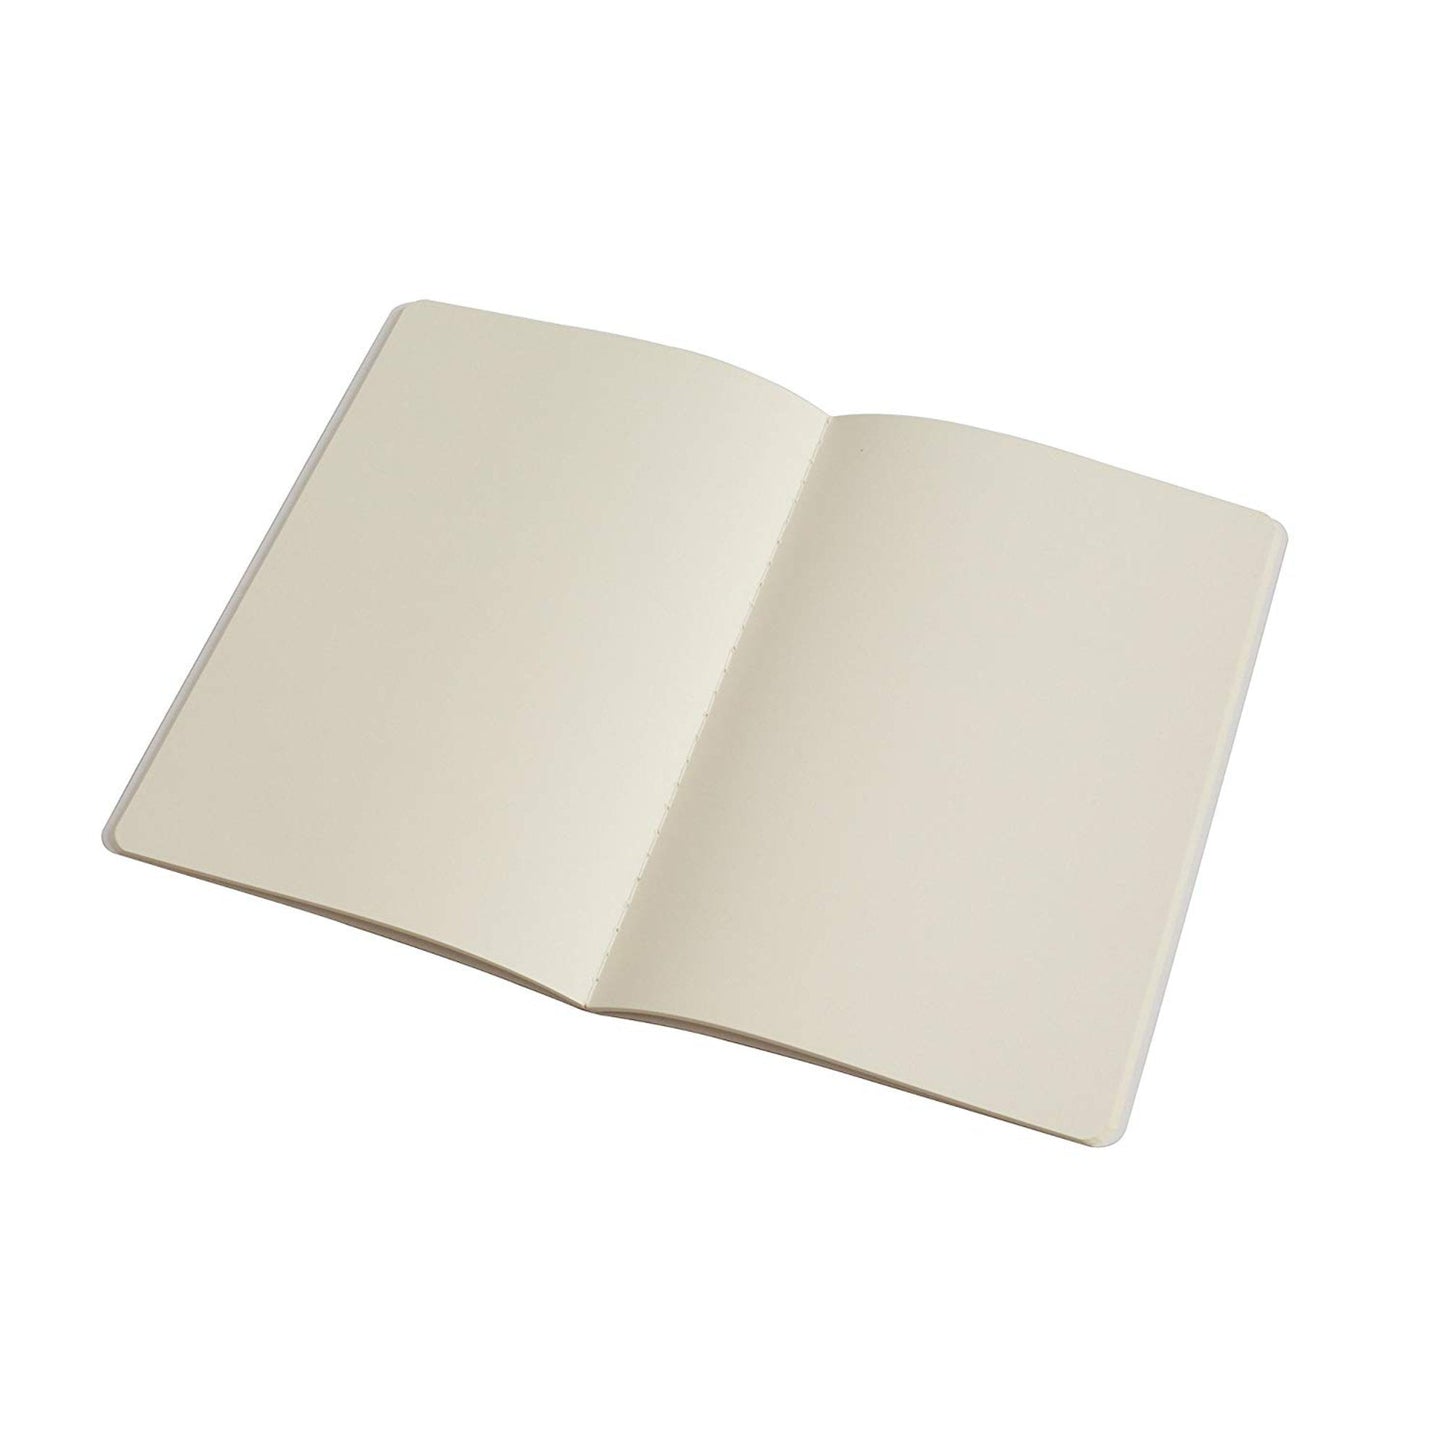 PinkPolish Design Notebook "Giddy" Notebook / Sketchbook / Journal